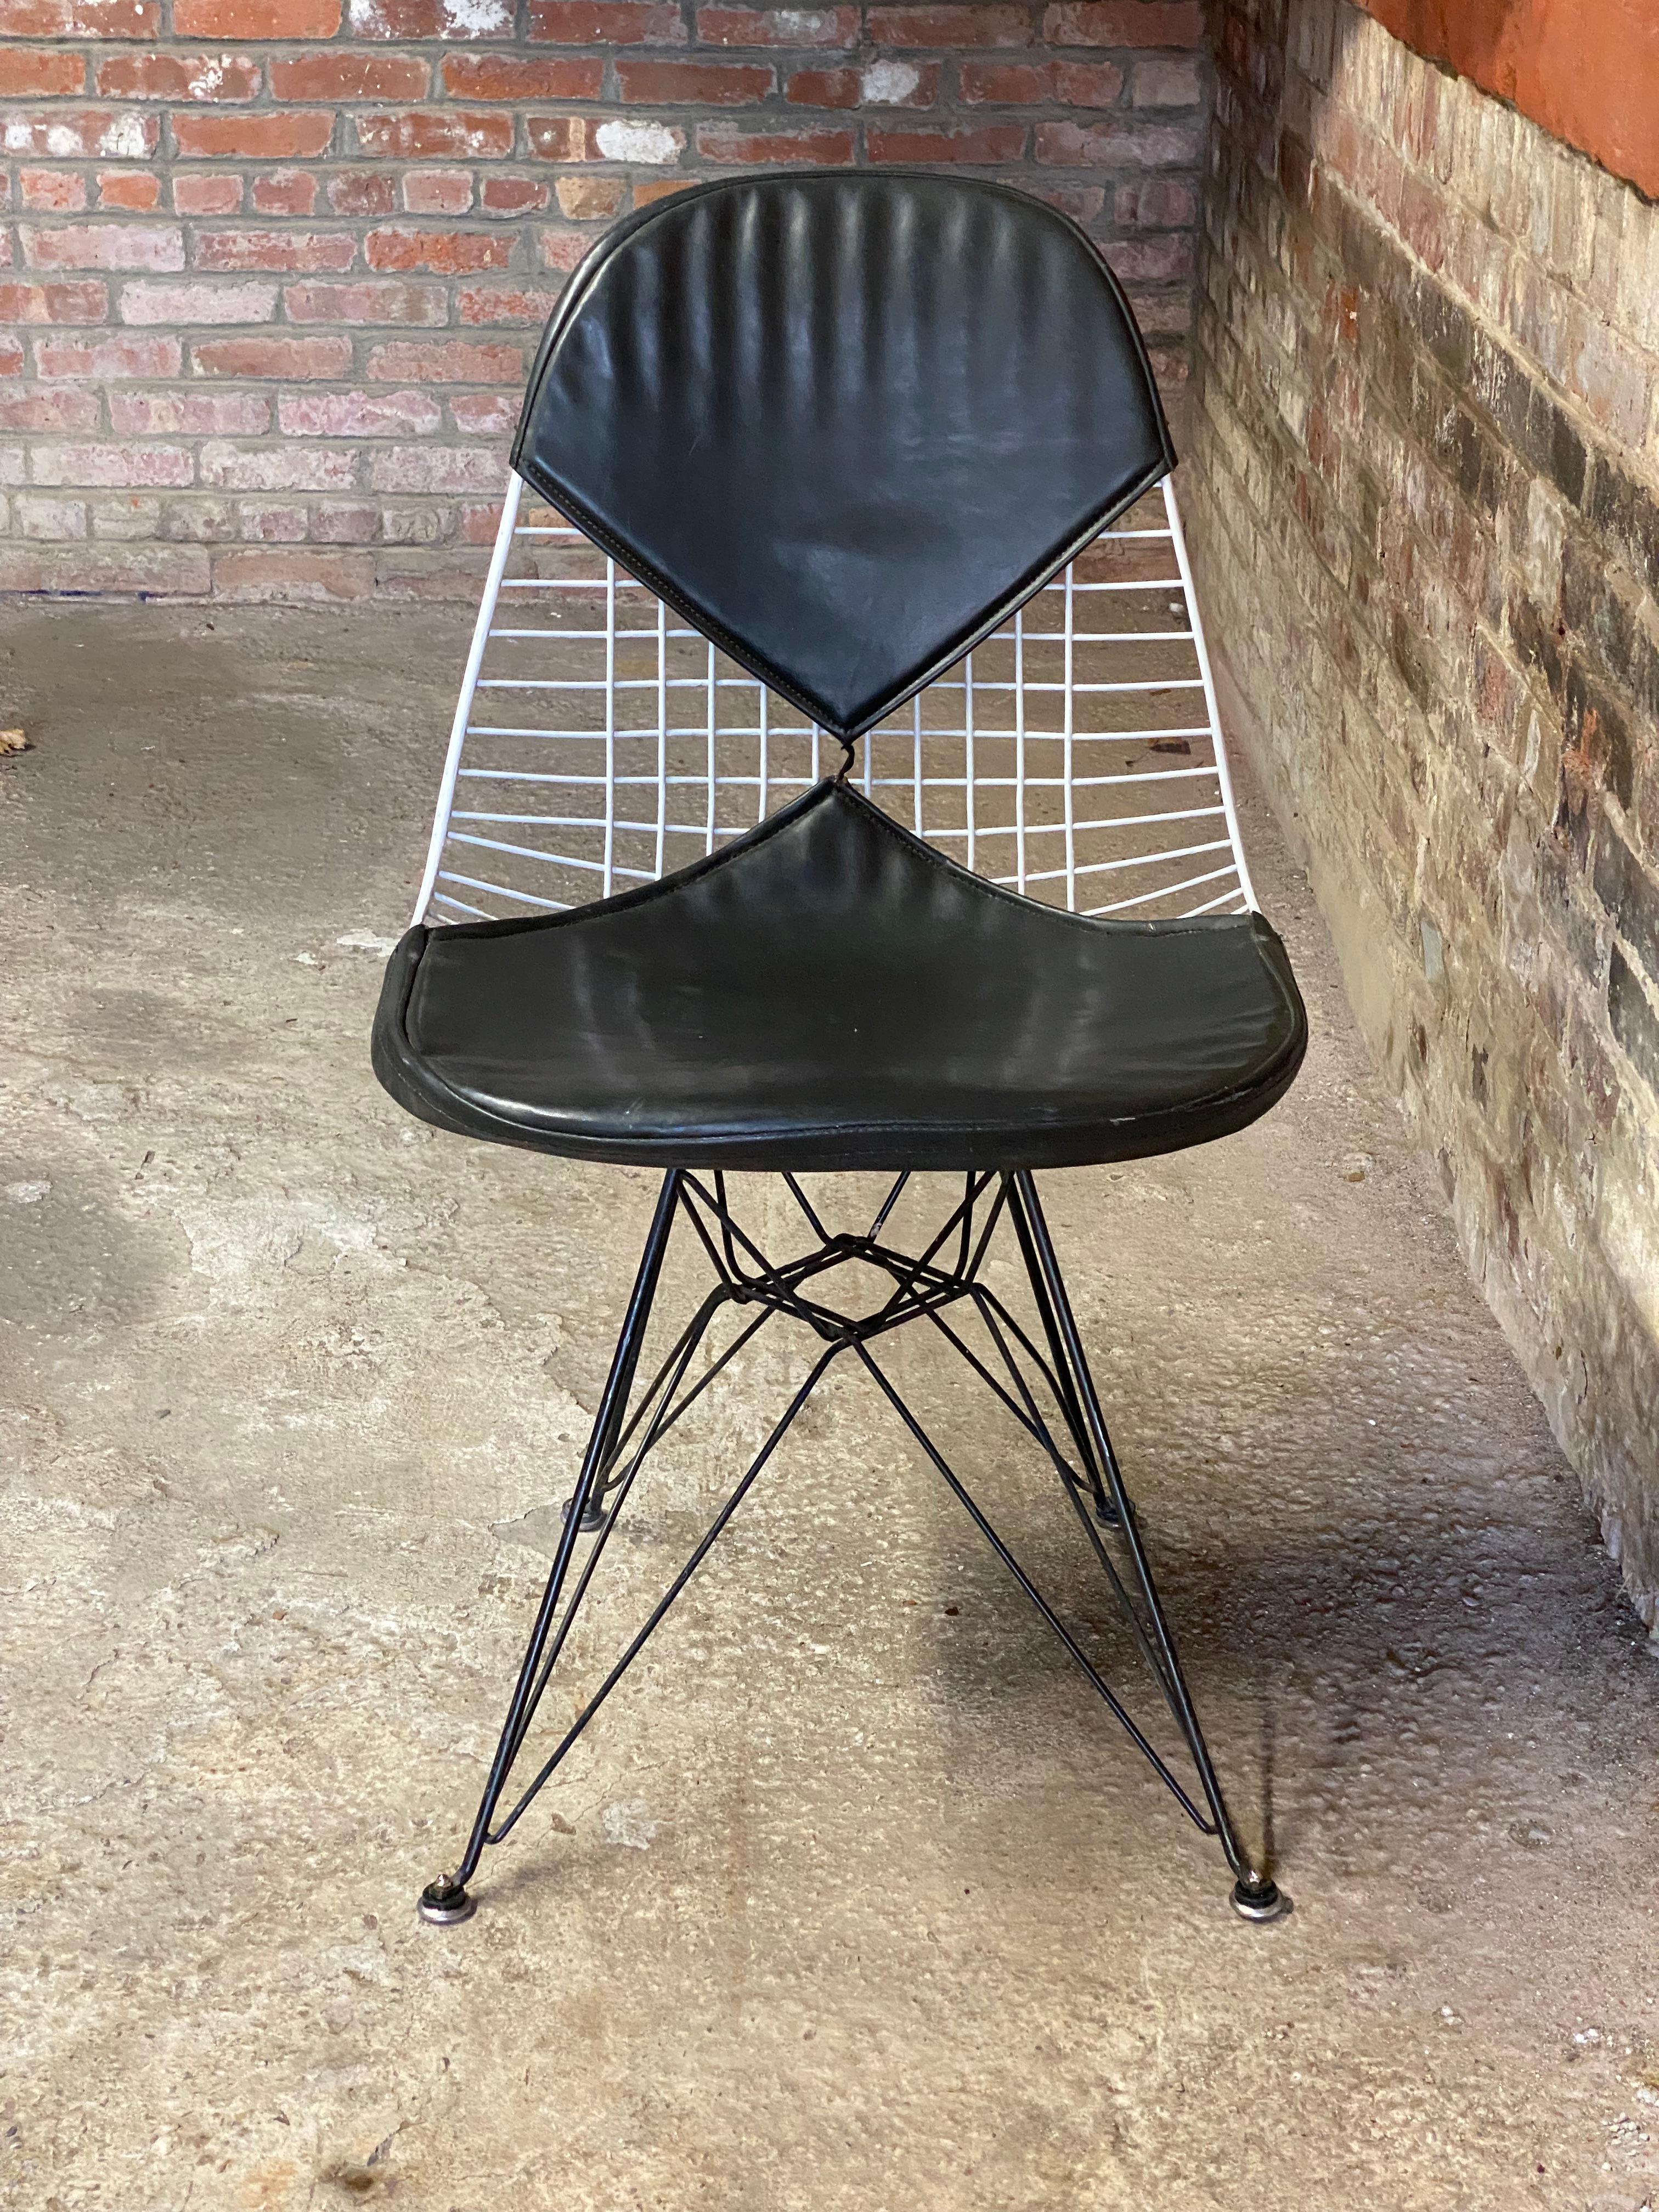 Chaise d'appoint Eames DKR-2 de première génération à base de tour Eiffel, avec les pieds évasés distincts et la base noire (qui n'a été commercialisée que dans la première version). La housse de la chaise Bikini est entièrement d'origine. La housse